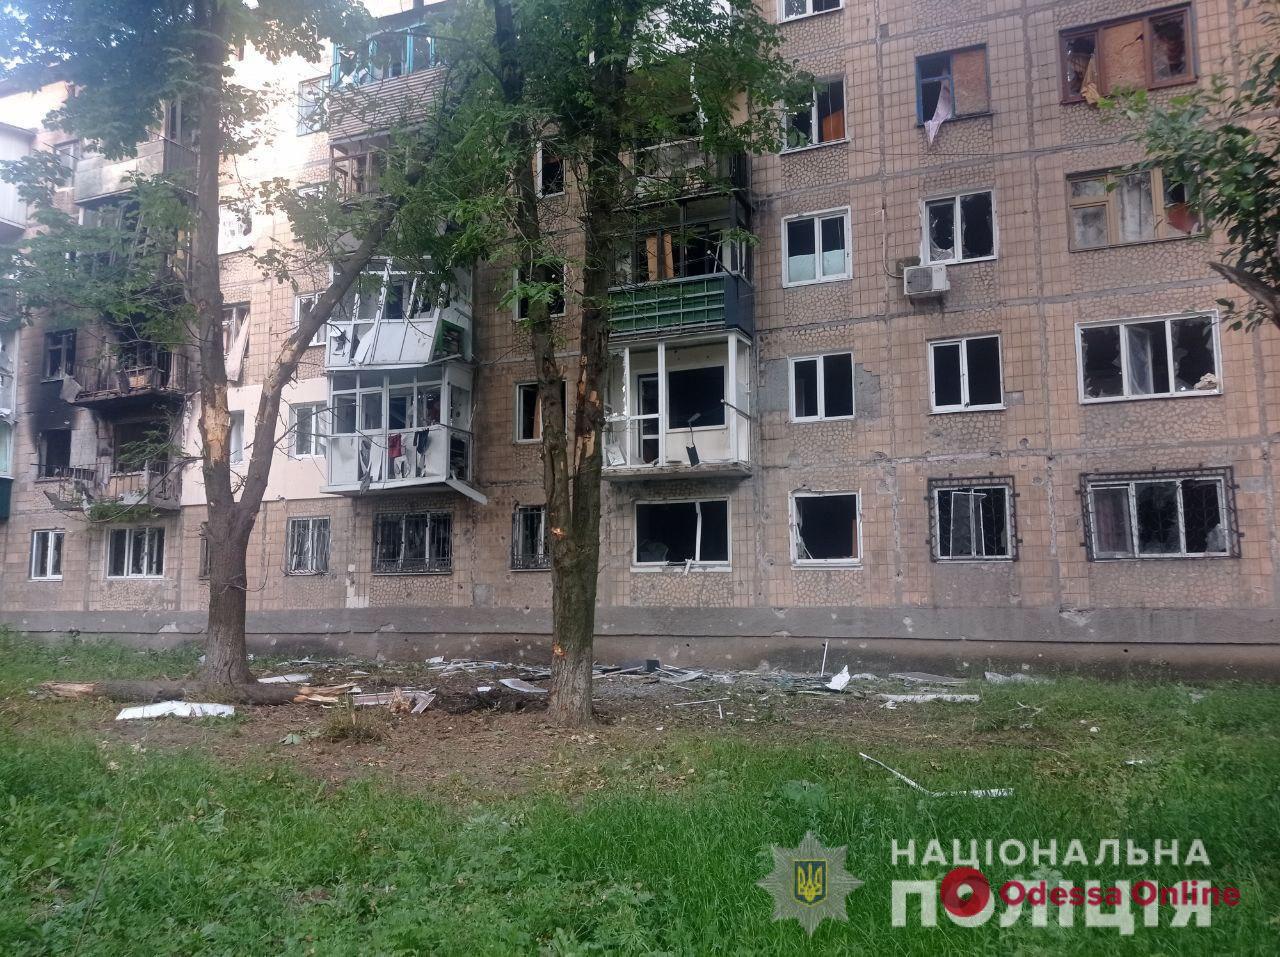 Рашисты обстреляли 13 населенных пунктов в Донецкой области